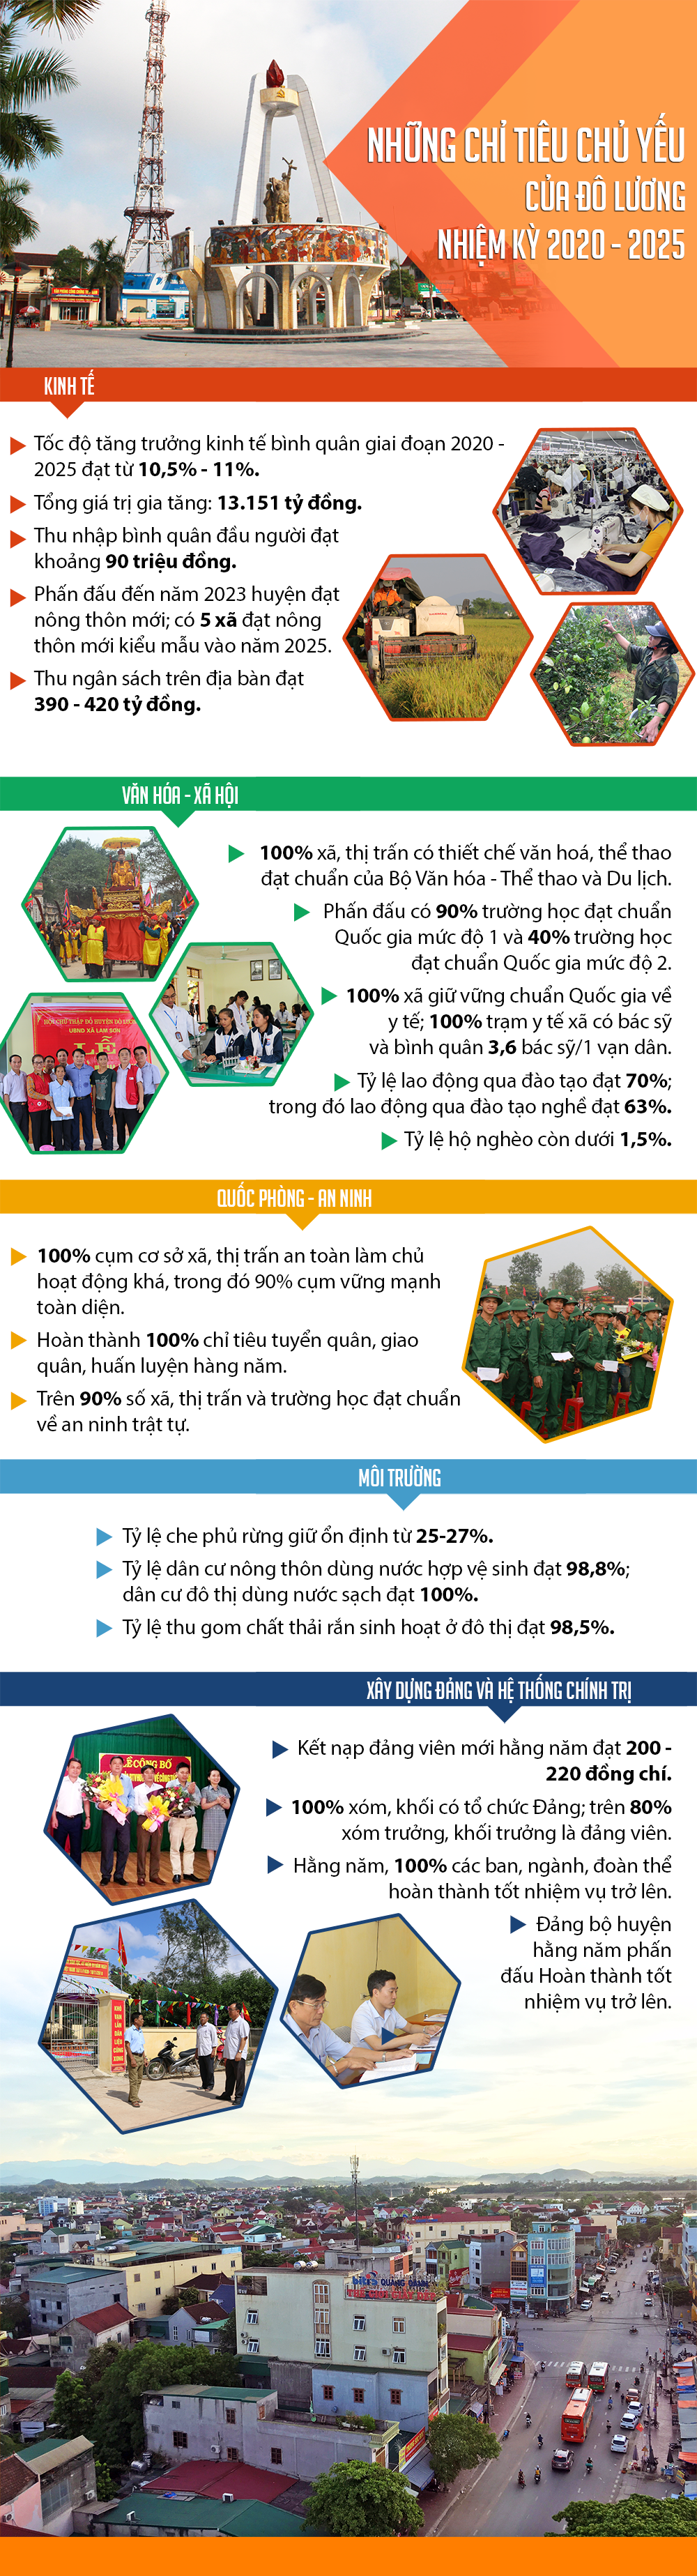 Các chỉ tiêu chủ yếu của Đảng bộ huyện Đô Lương nhiệm kỳ 2020 - 20205